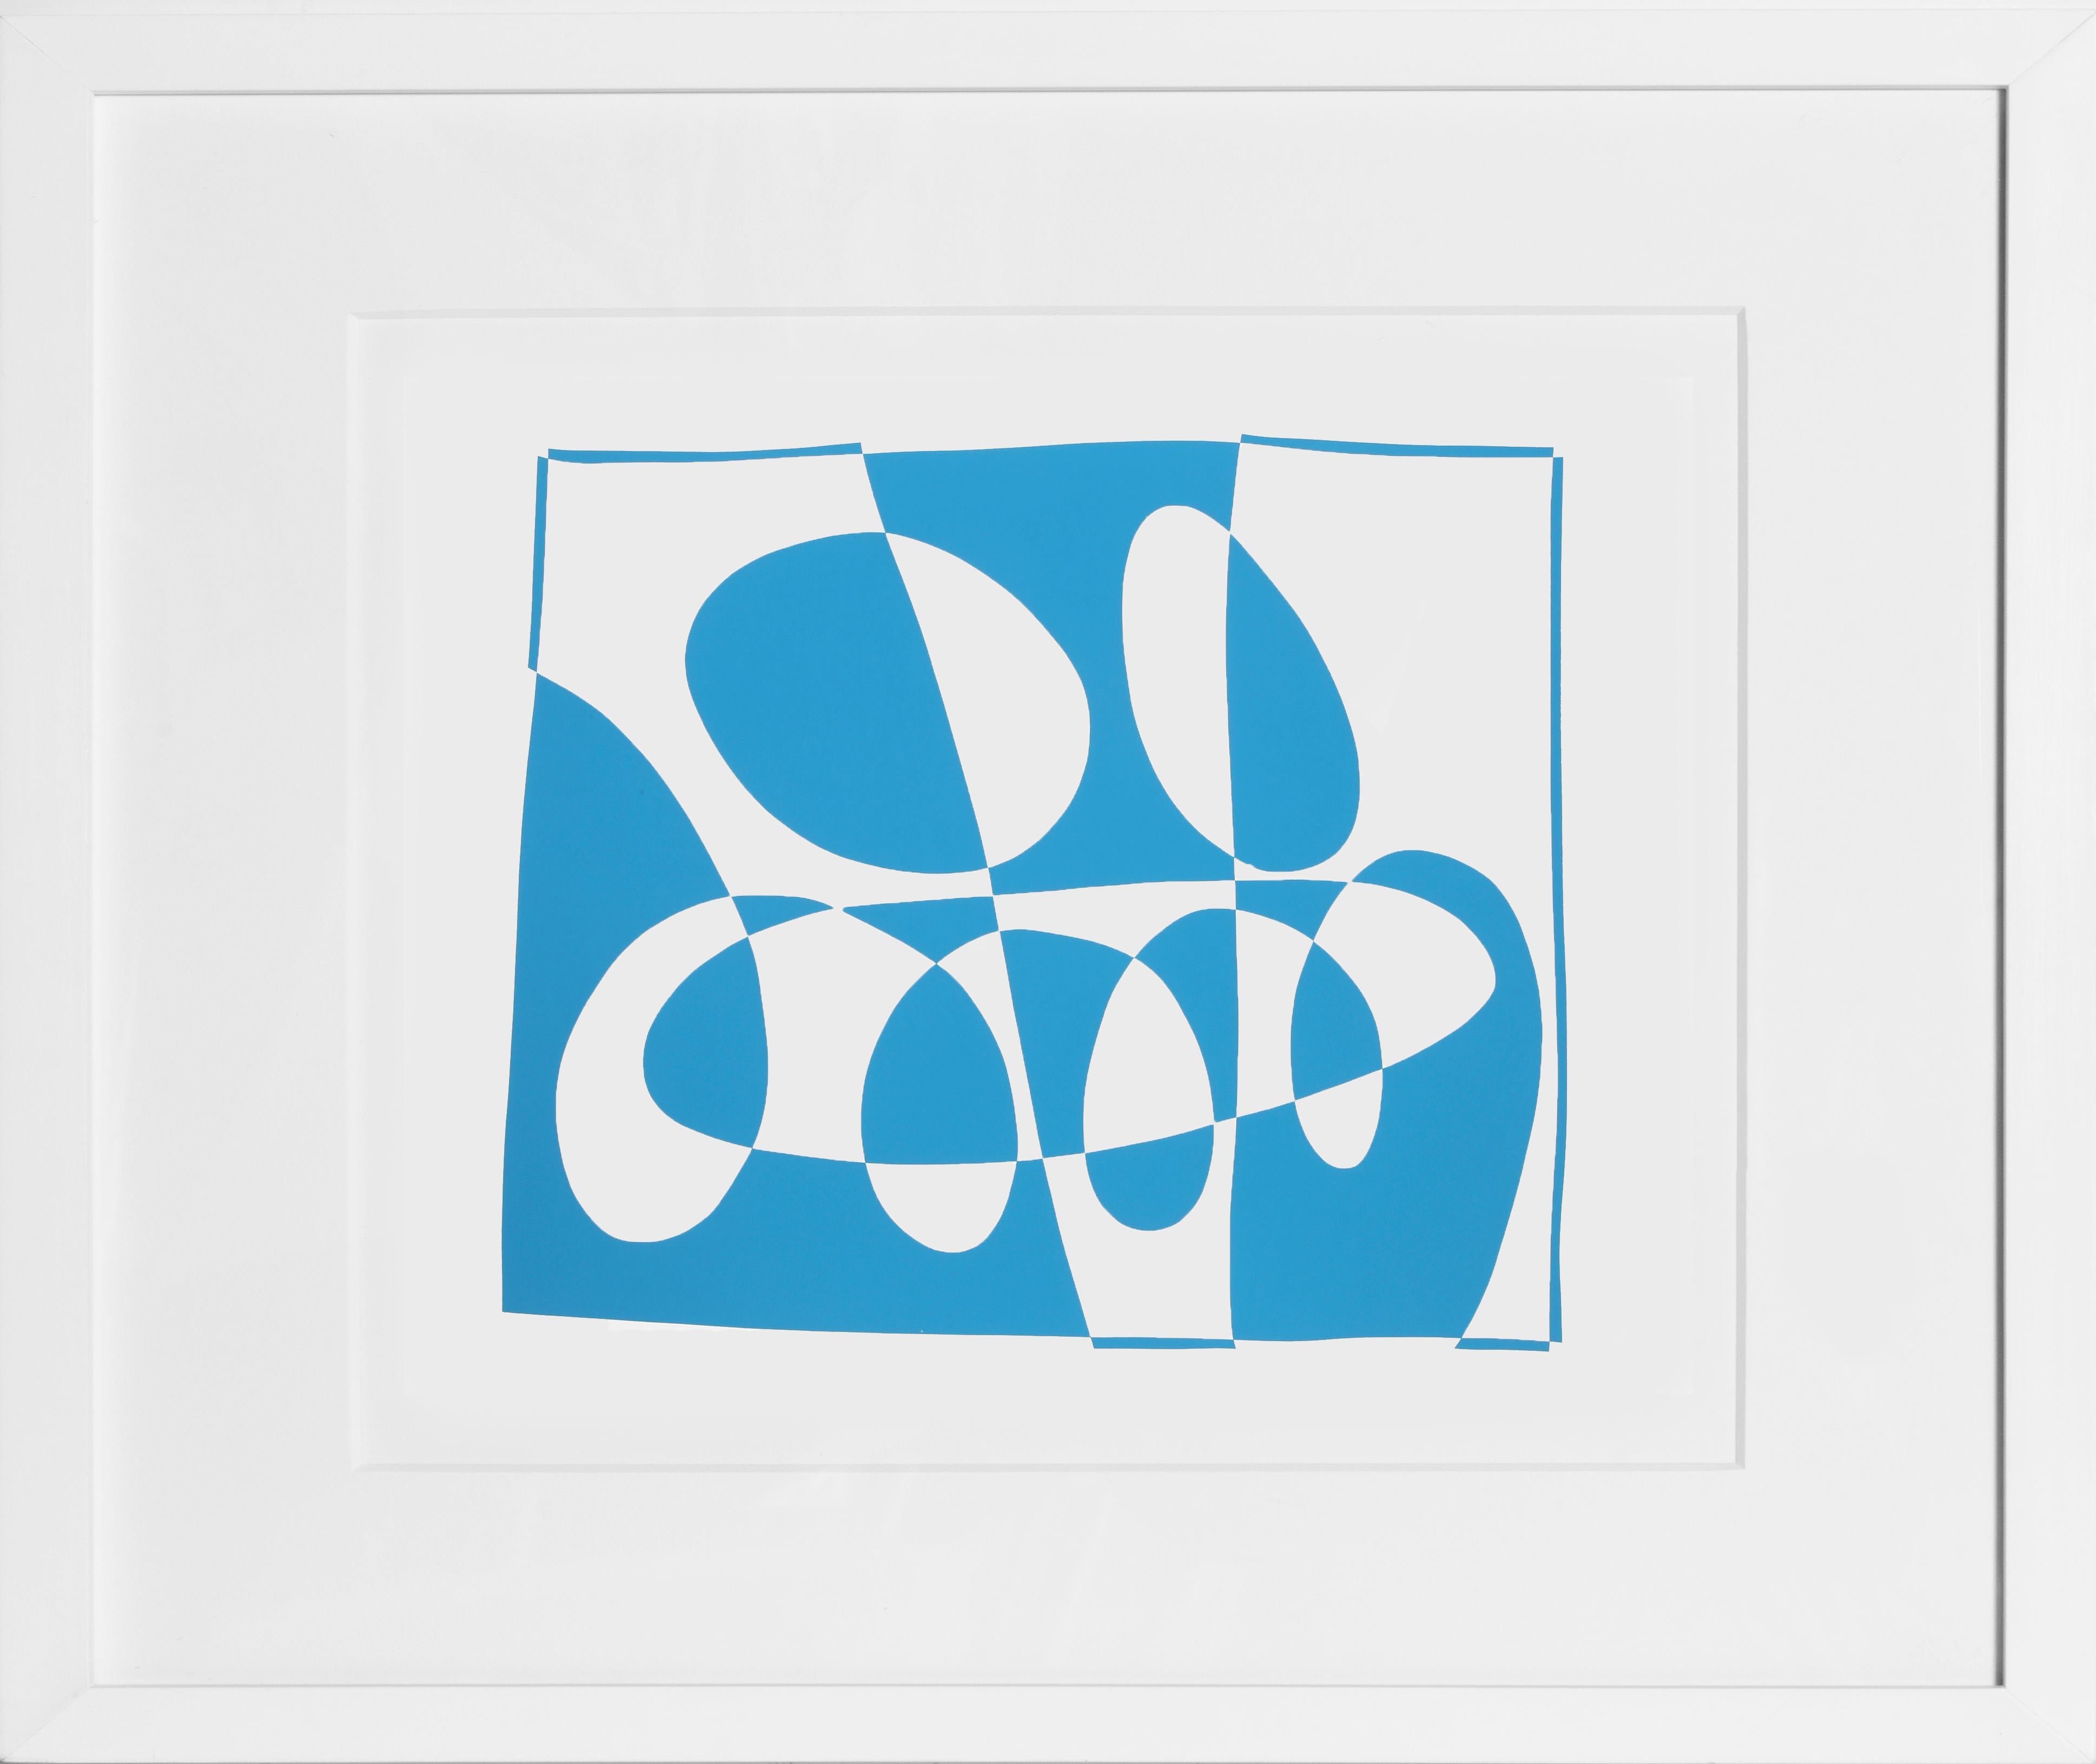 Aus der Mappe "Formulierung: Articulation" von Josef Albers aus dem Jahr 1972. Diese monumentale Serie besteht aus 127 Original-Siebdrucken, die einen endgültigen Überblick über die wichtigsten Farb- und Formtheorien des Künstlers geben.  Eine Kopie